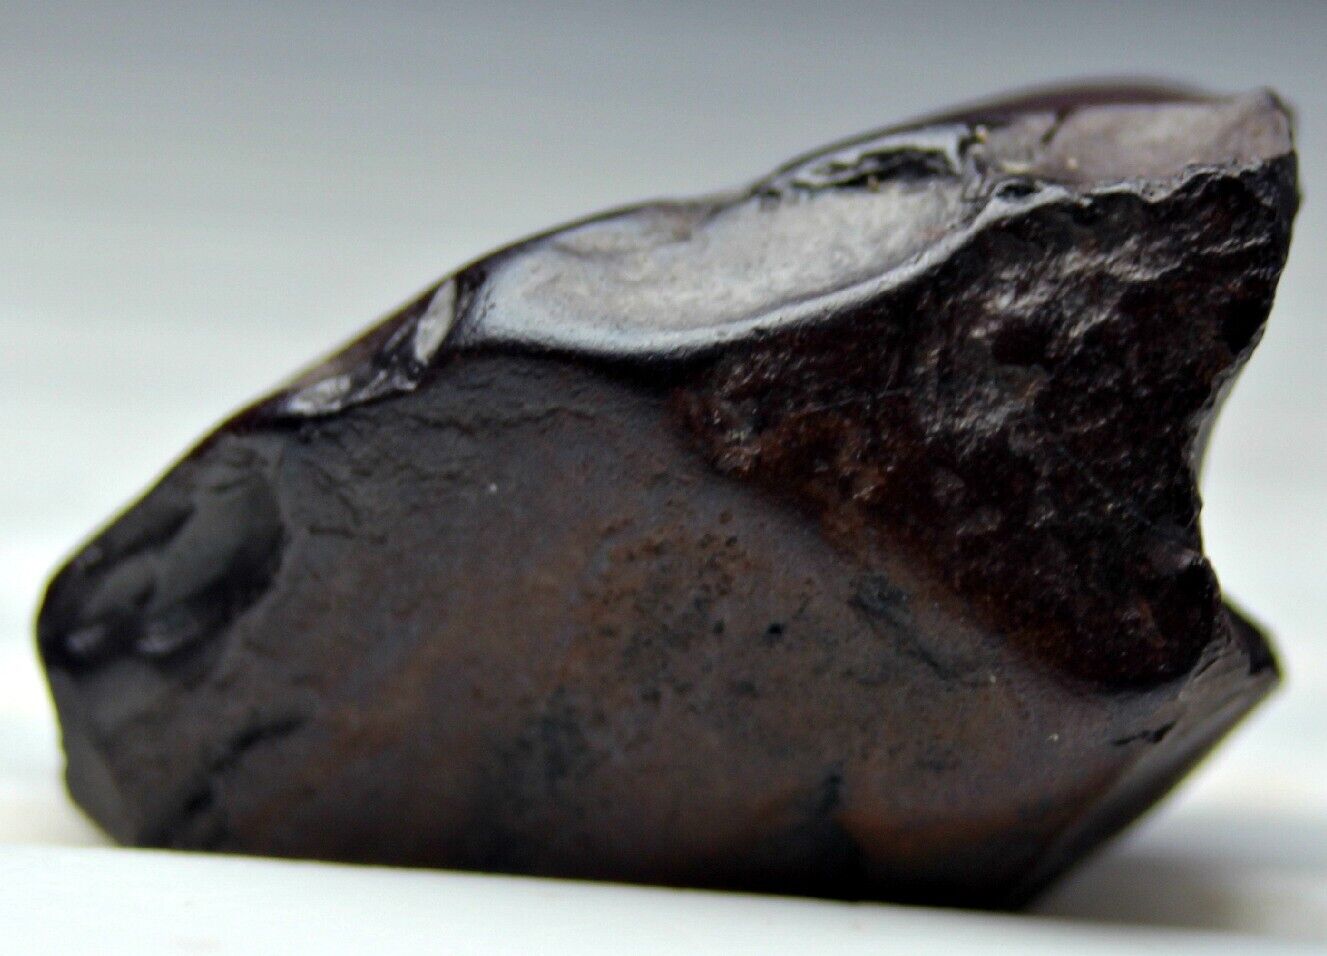 Genuine Meteorite Iron Meteorite Chondrite Unidentified Meteorite Nugget 12.5 CT